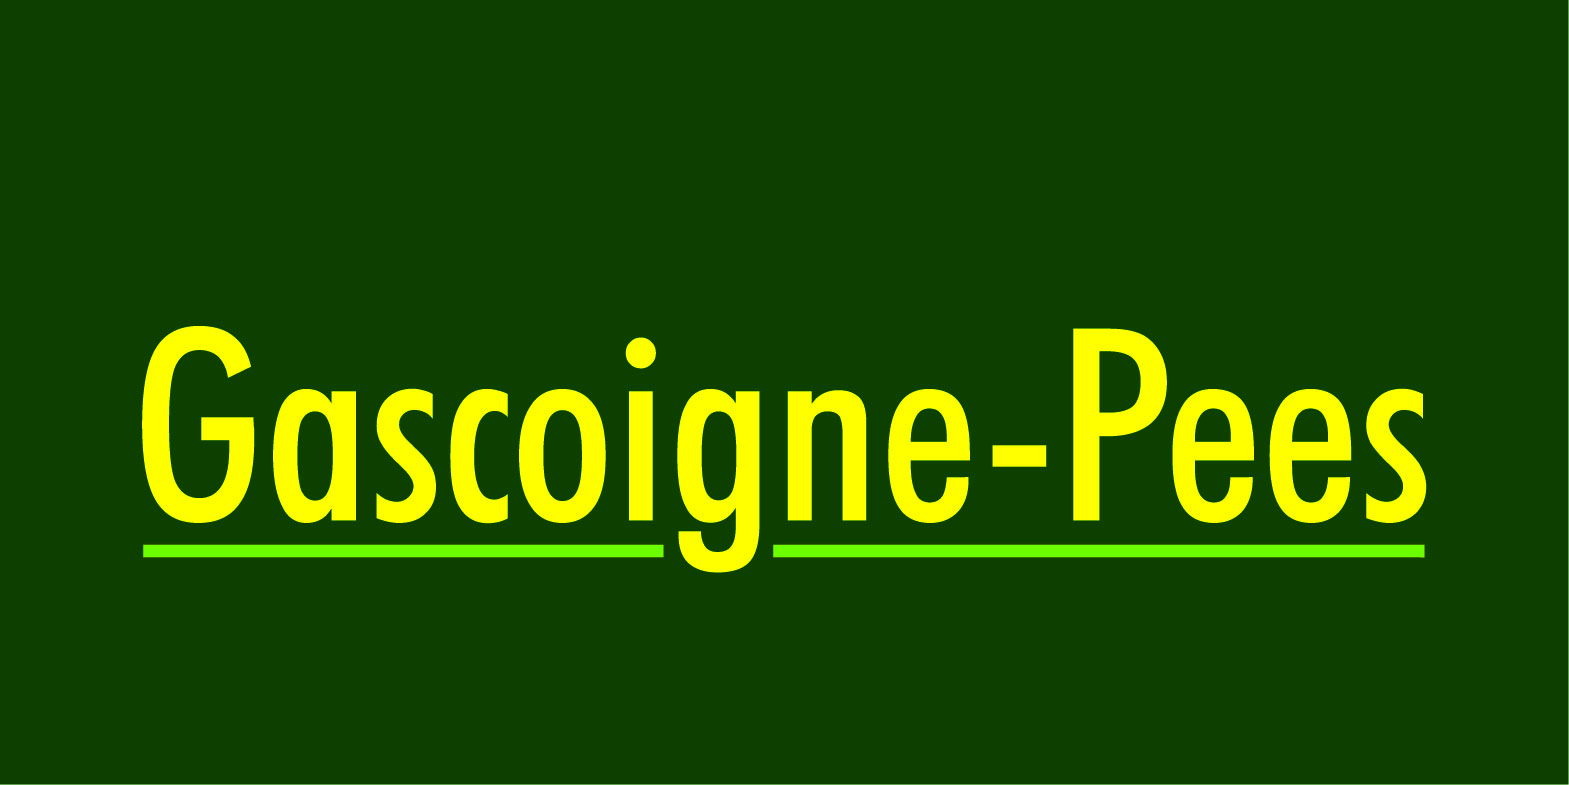 Gascoigne–Pees